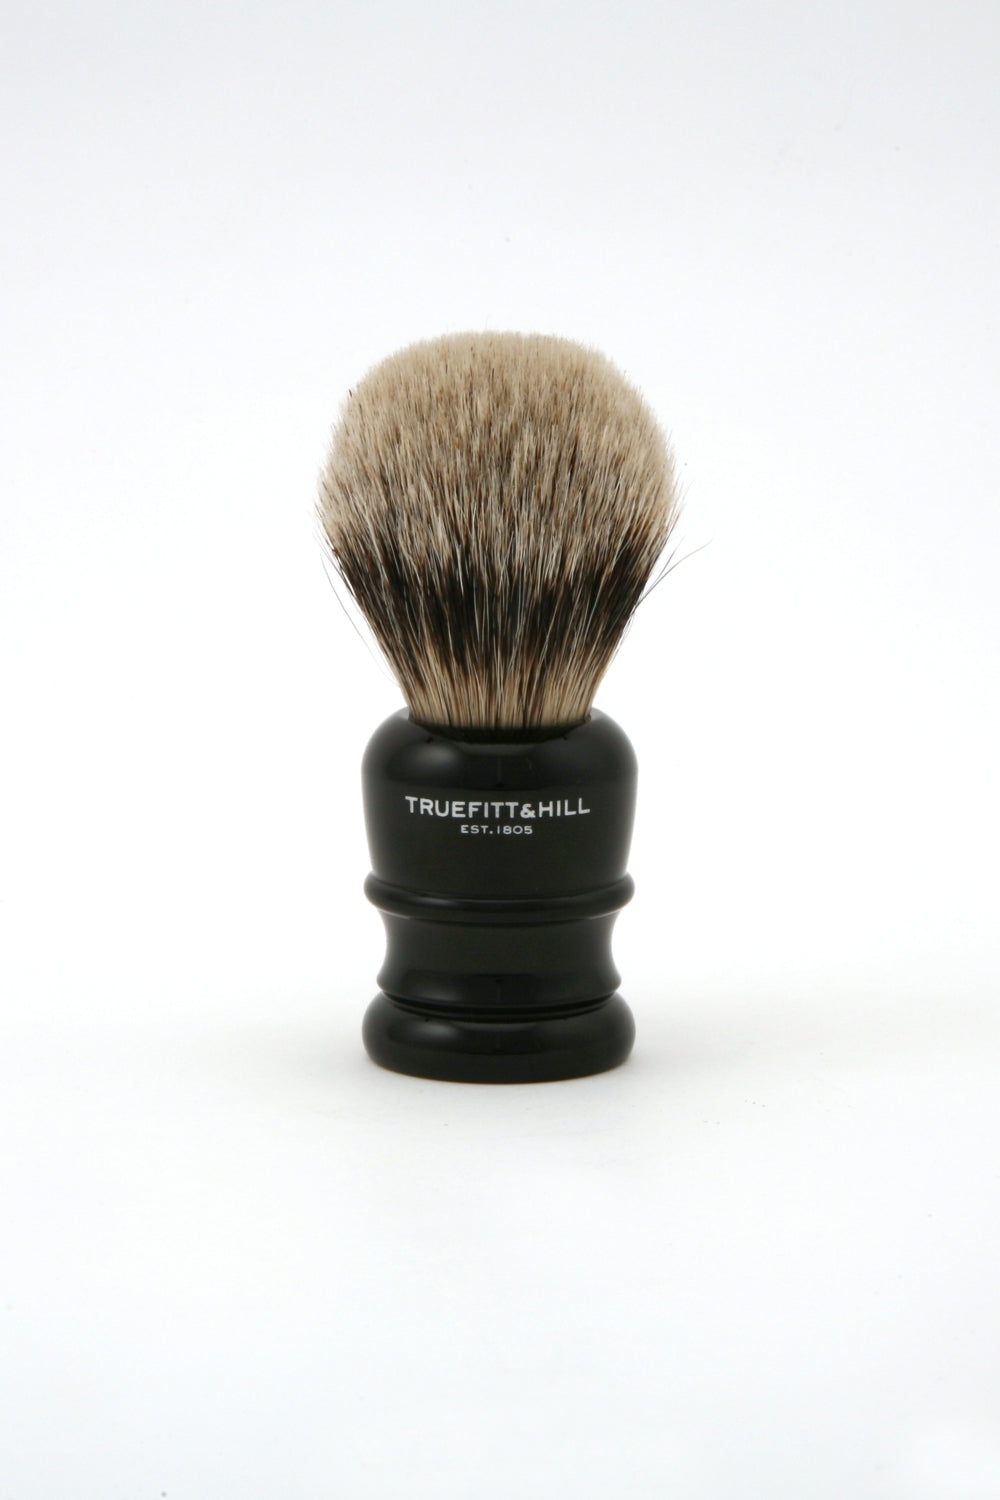 Truefitt & Hill - Wellington Badger Shaving Brush - Ebony - Regent Tailoring